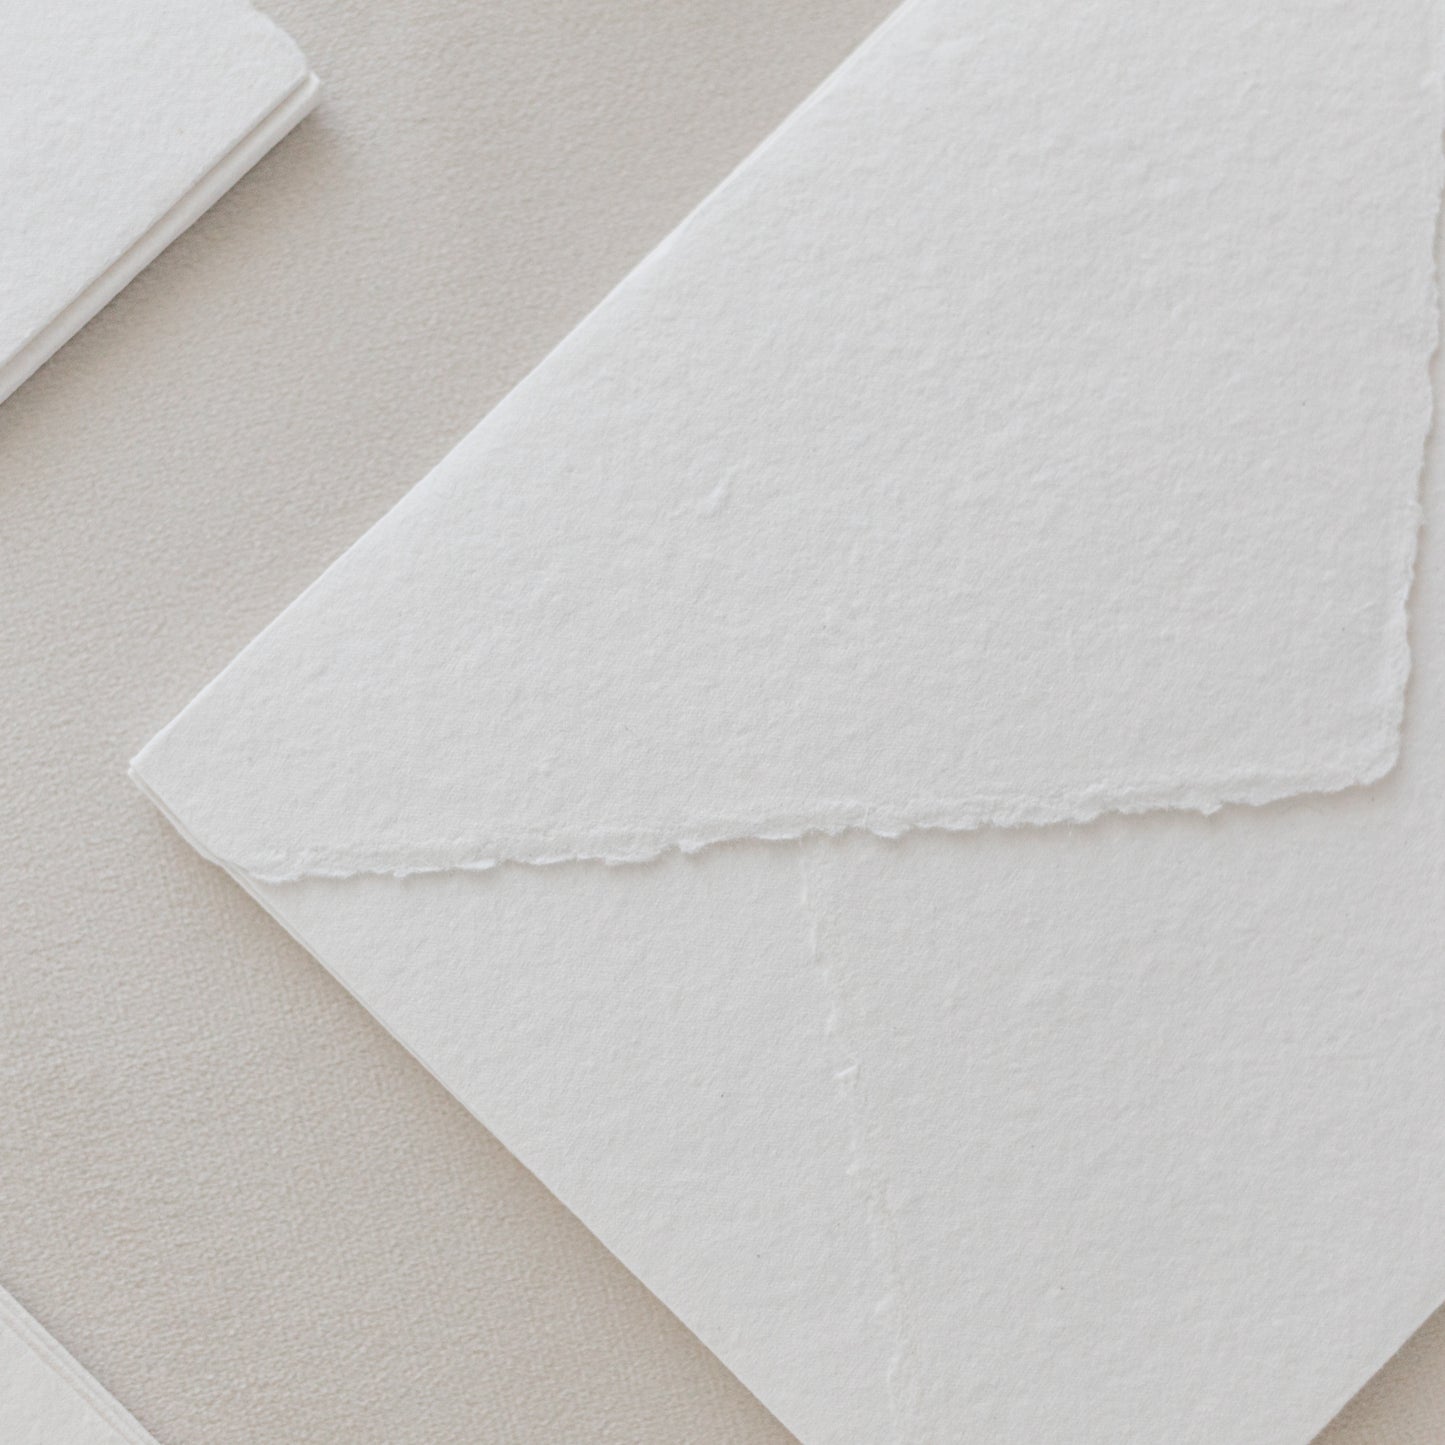 5x7 – White Handmade Paper Envelopes